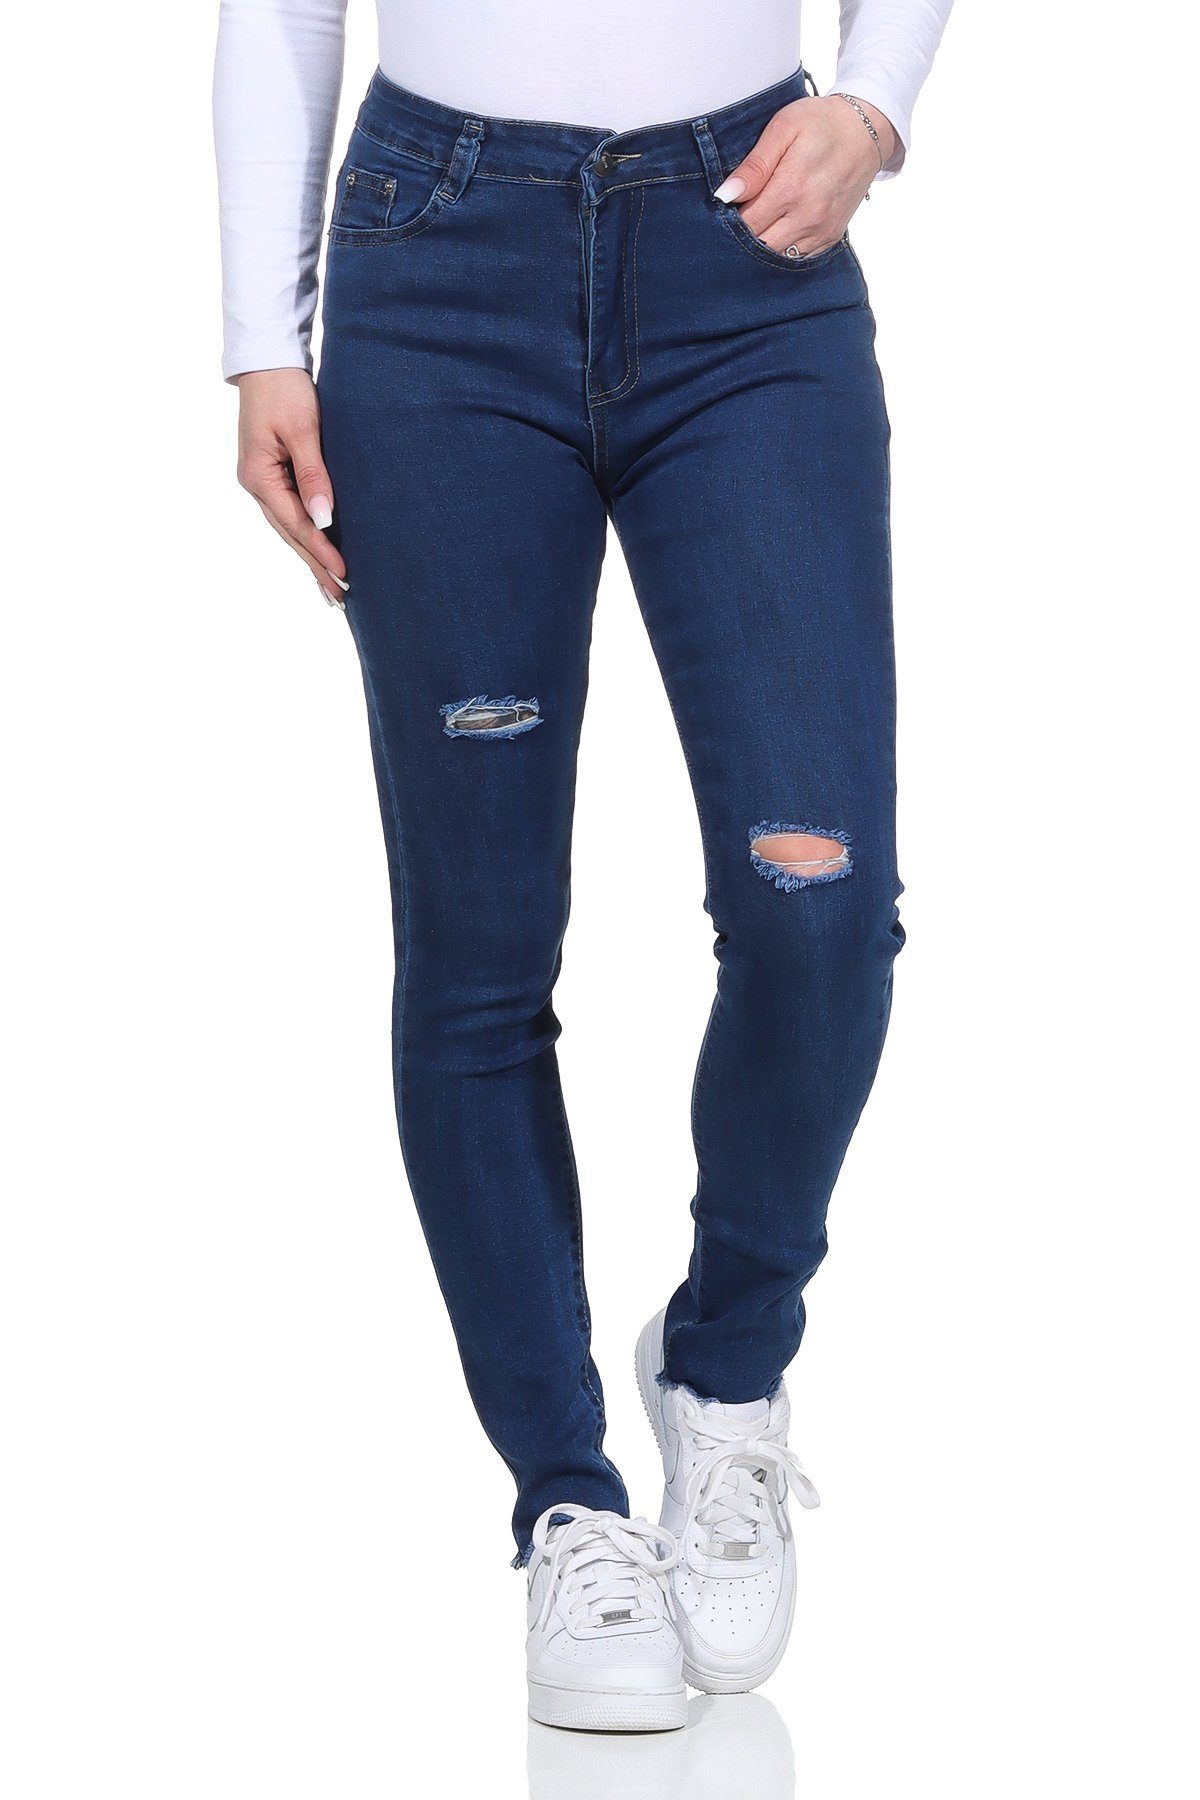 Aurela Damenmode Destroyed-Jeans »Damen Jeanshosen im Used Look 5 Pocket  Jeans mit Rissen« online kaufen | OTTO